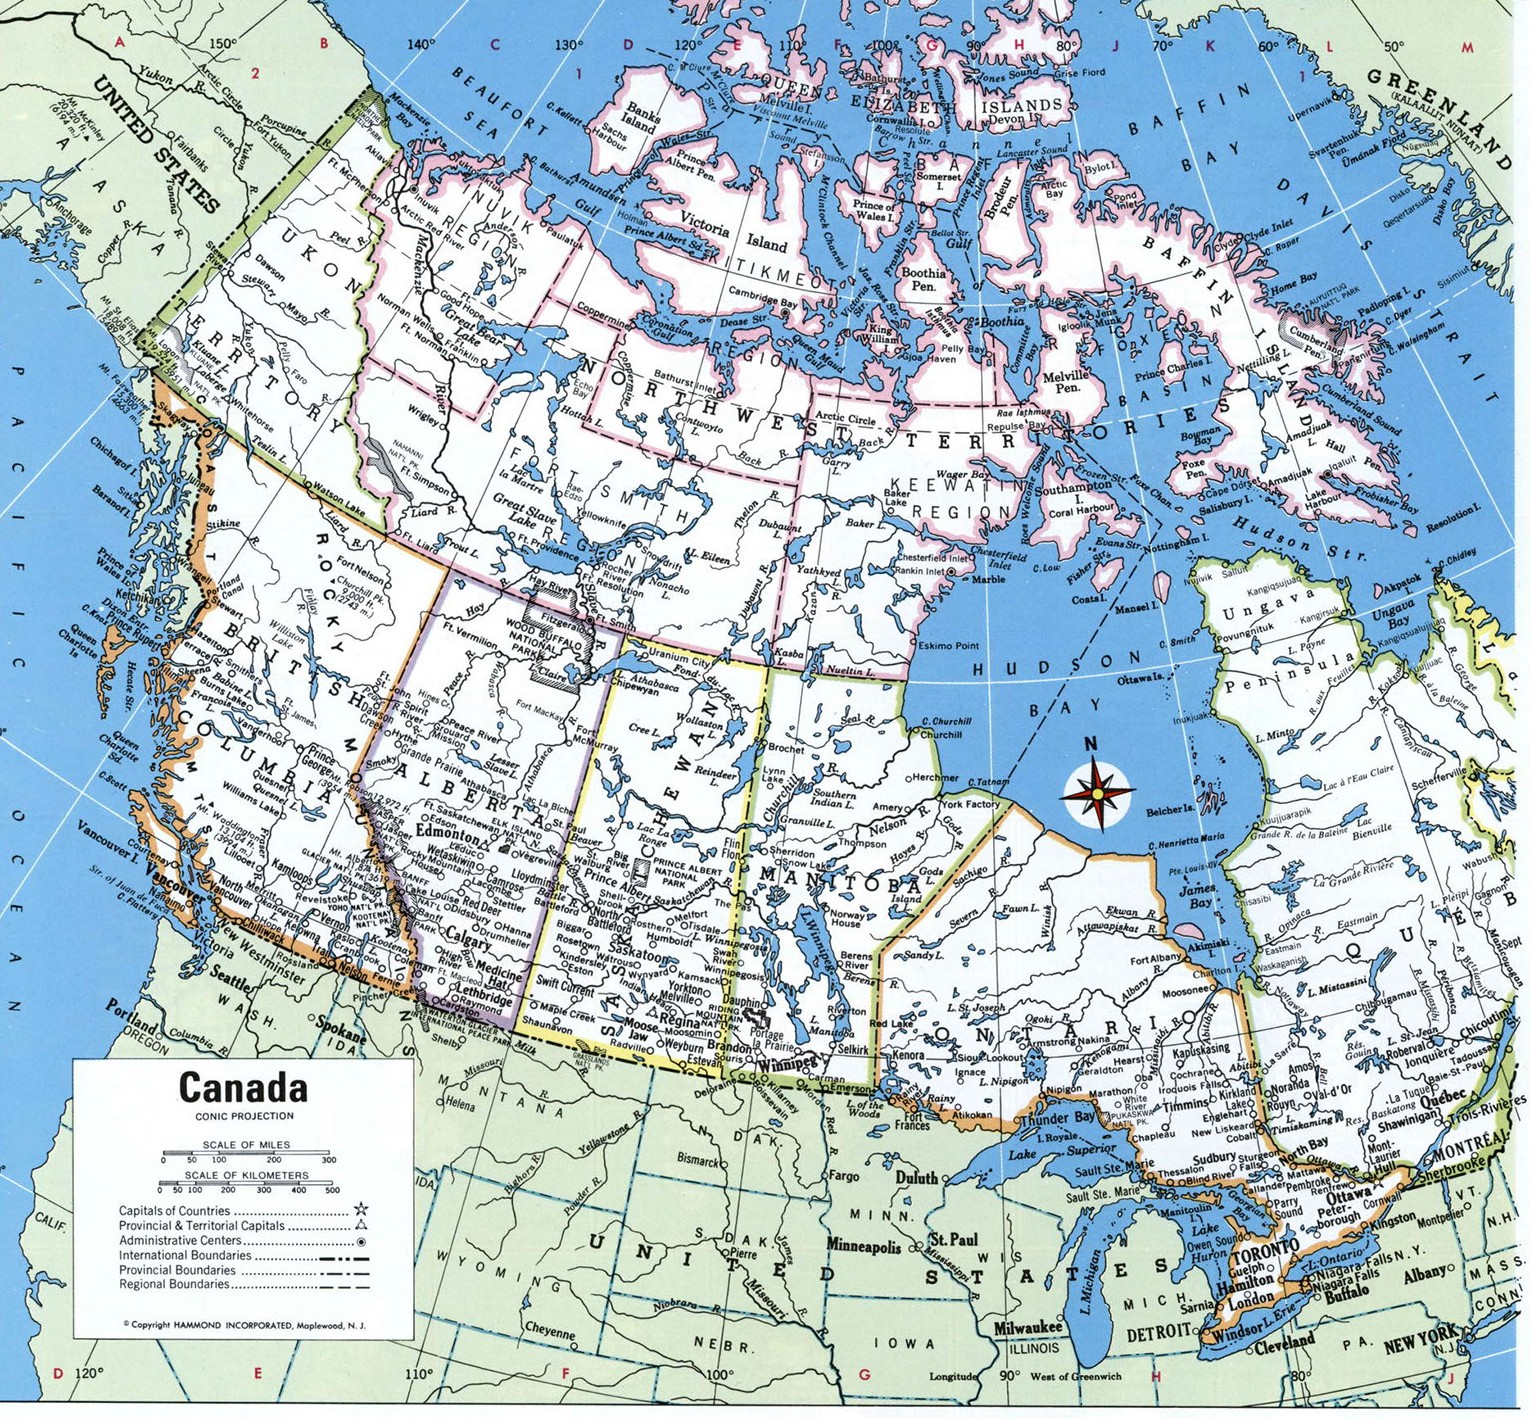 Карта канады с провинциями и городами на русском языке